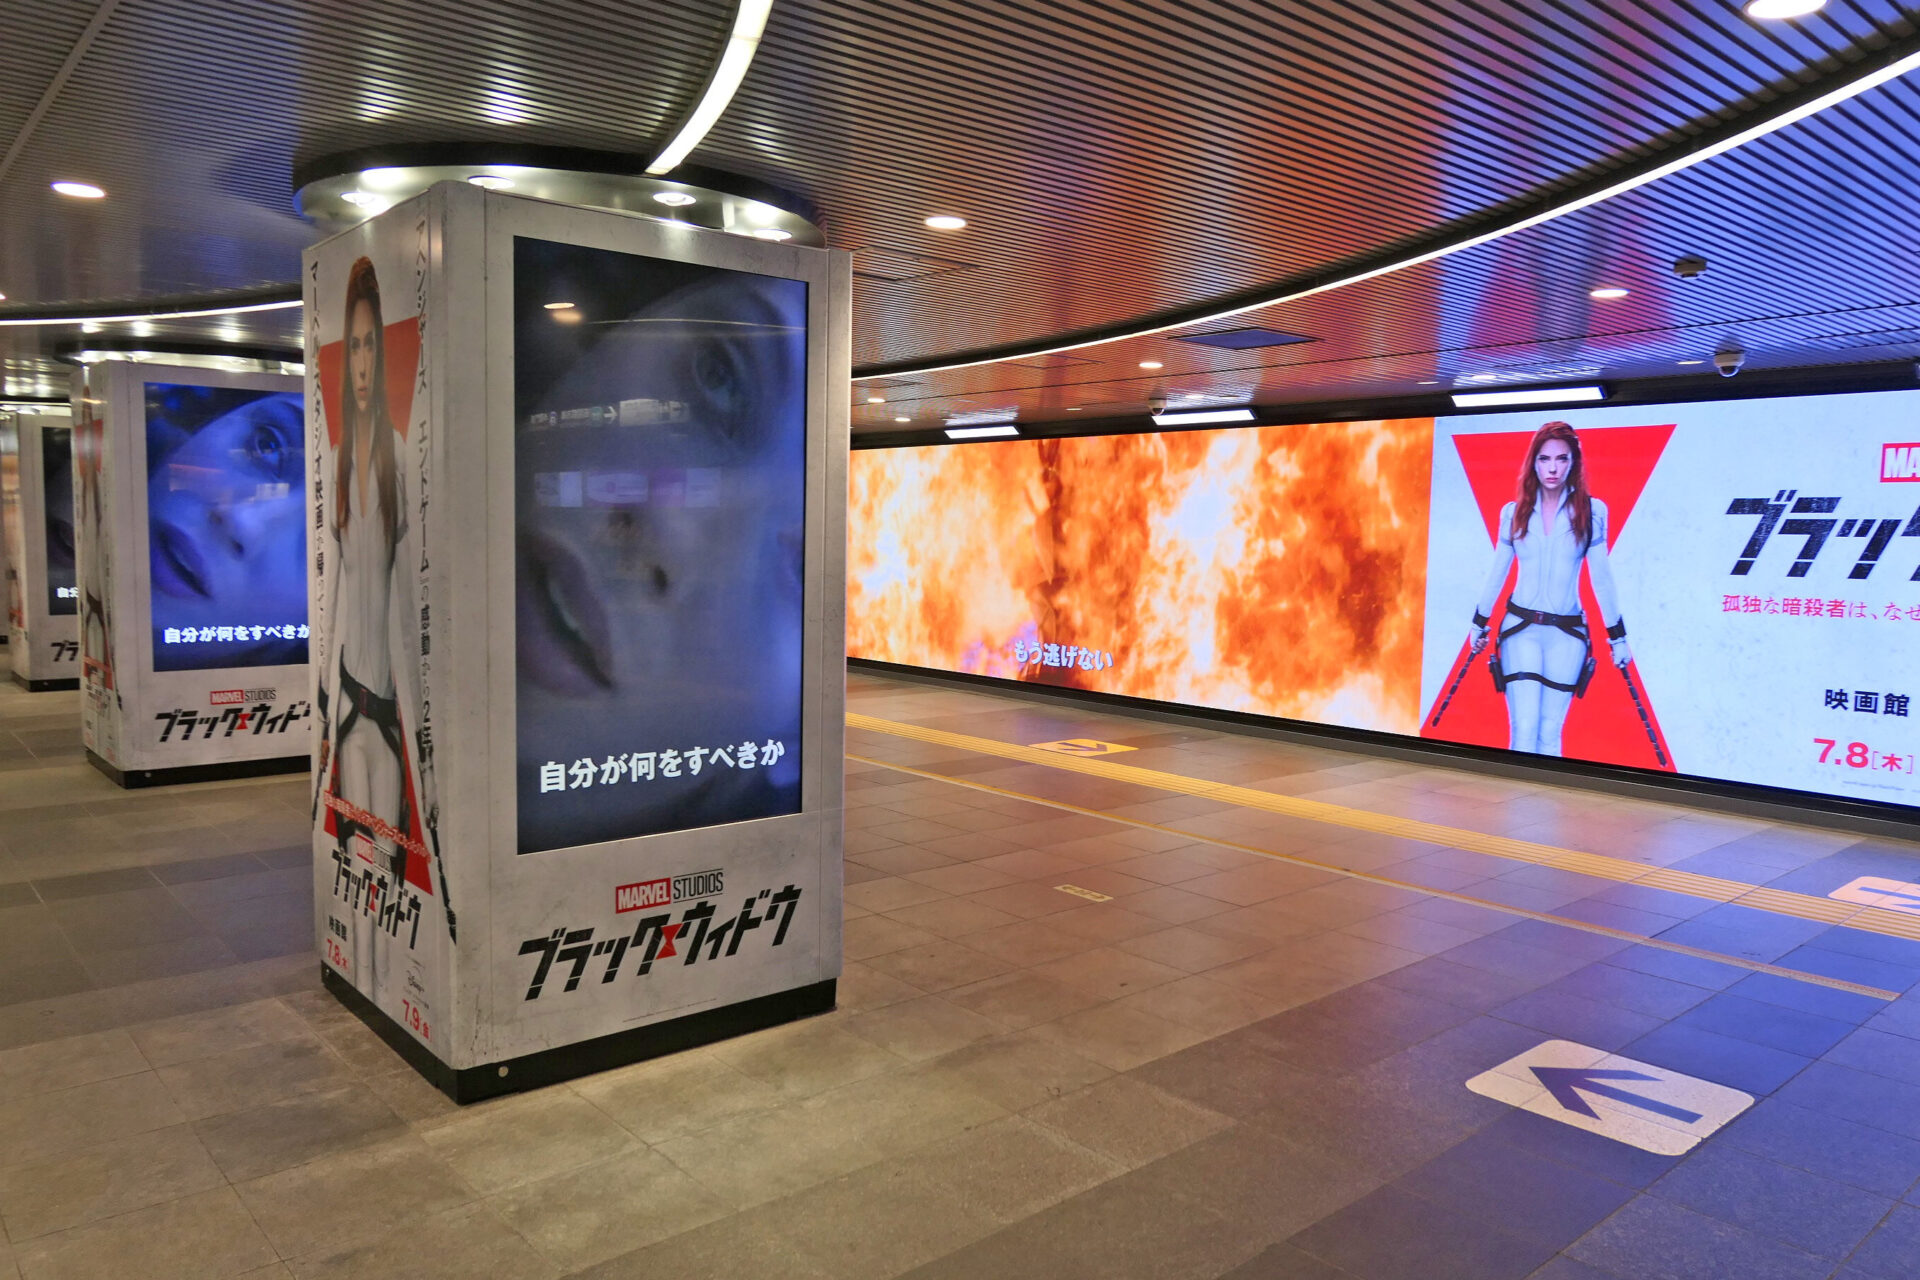 東急渋谷駅ビッグサイネージプレミアム